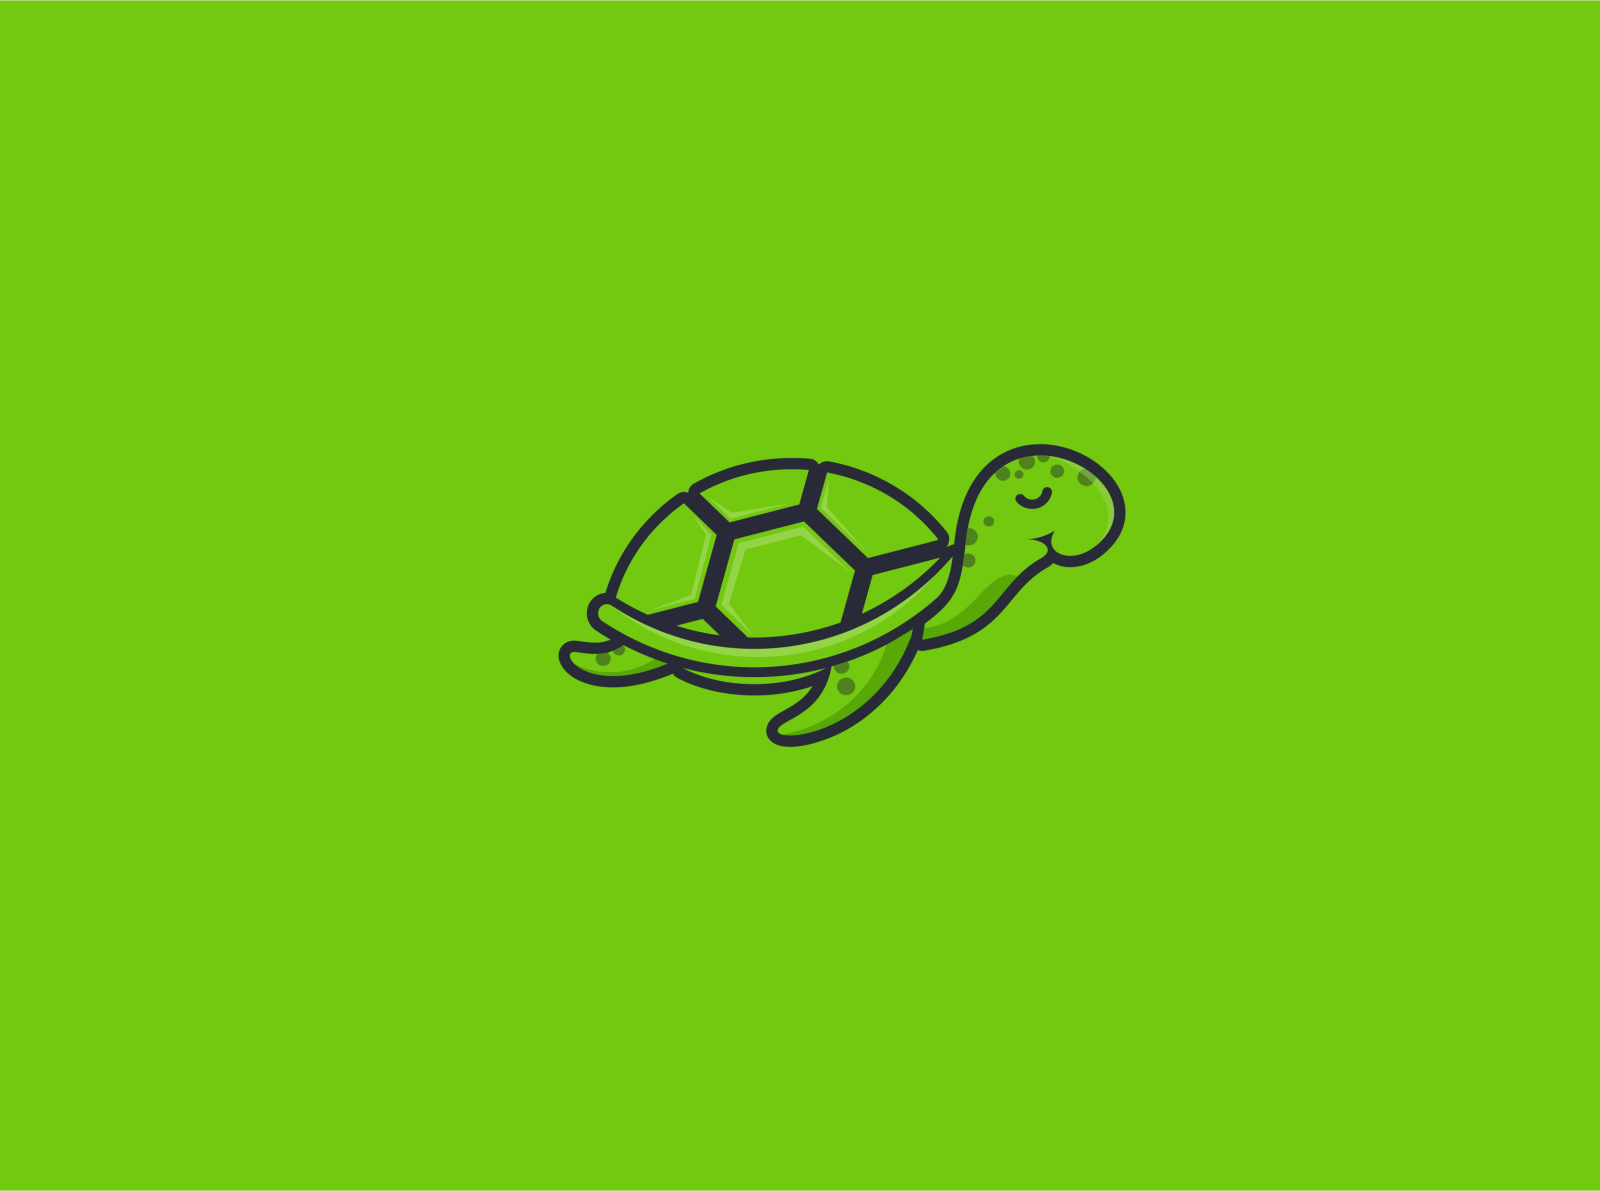 The lazy turtle logo by Abhinaya Naila on Dribbble